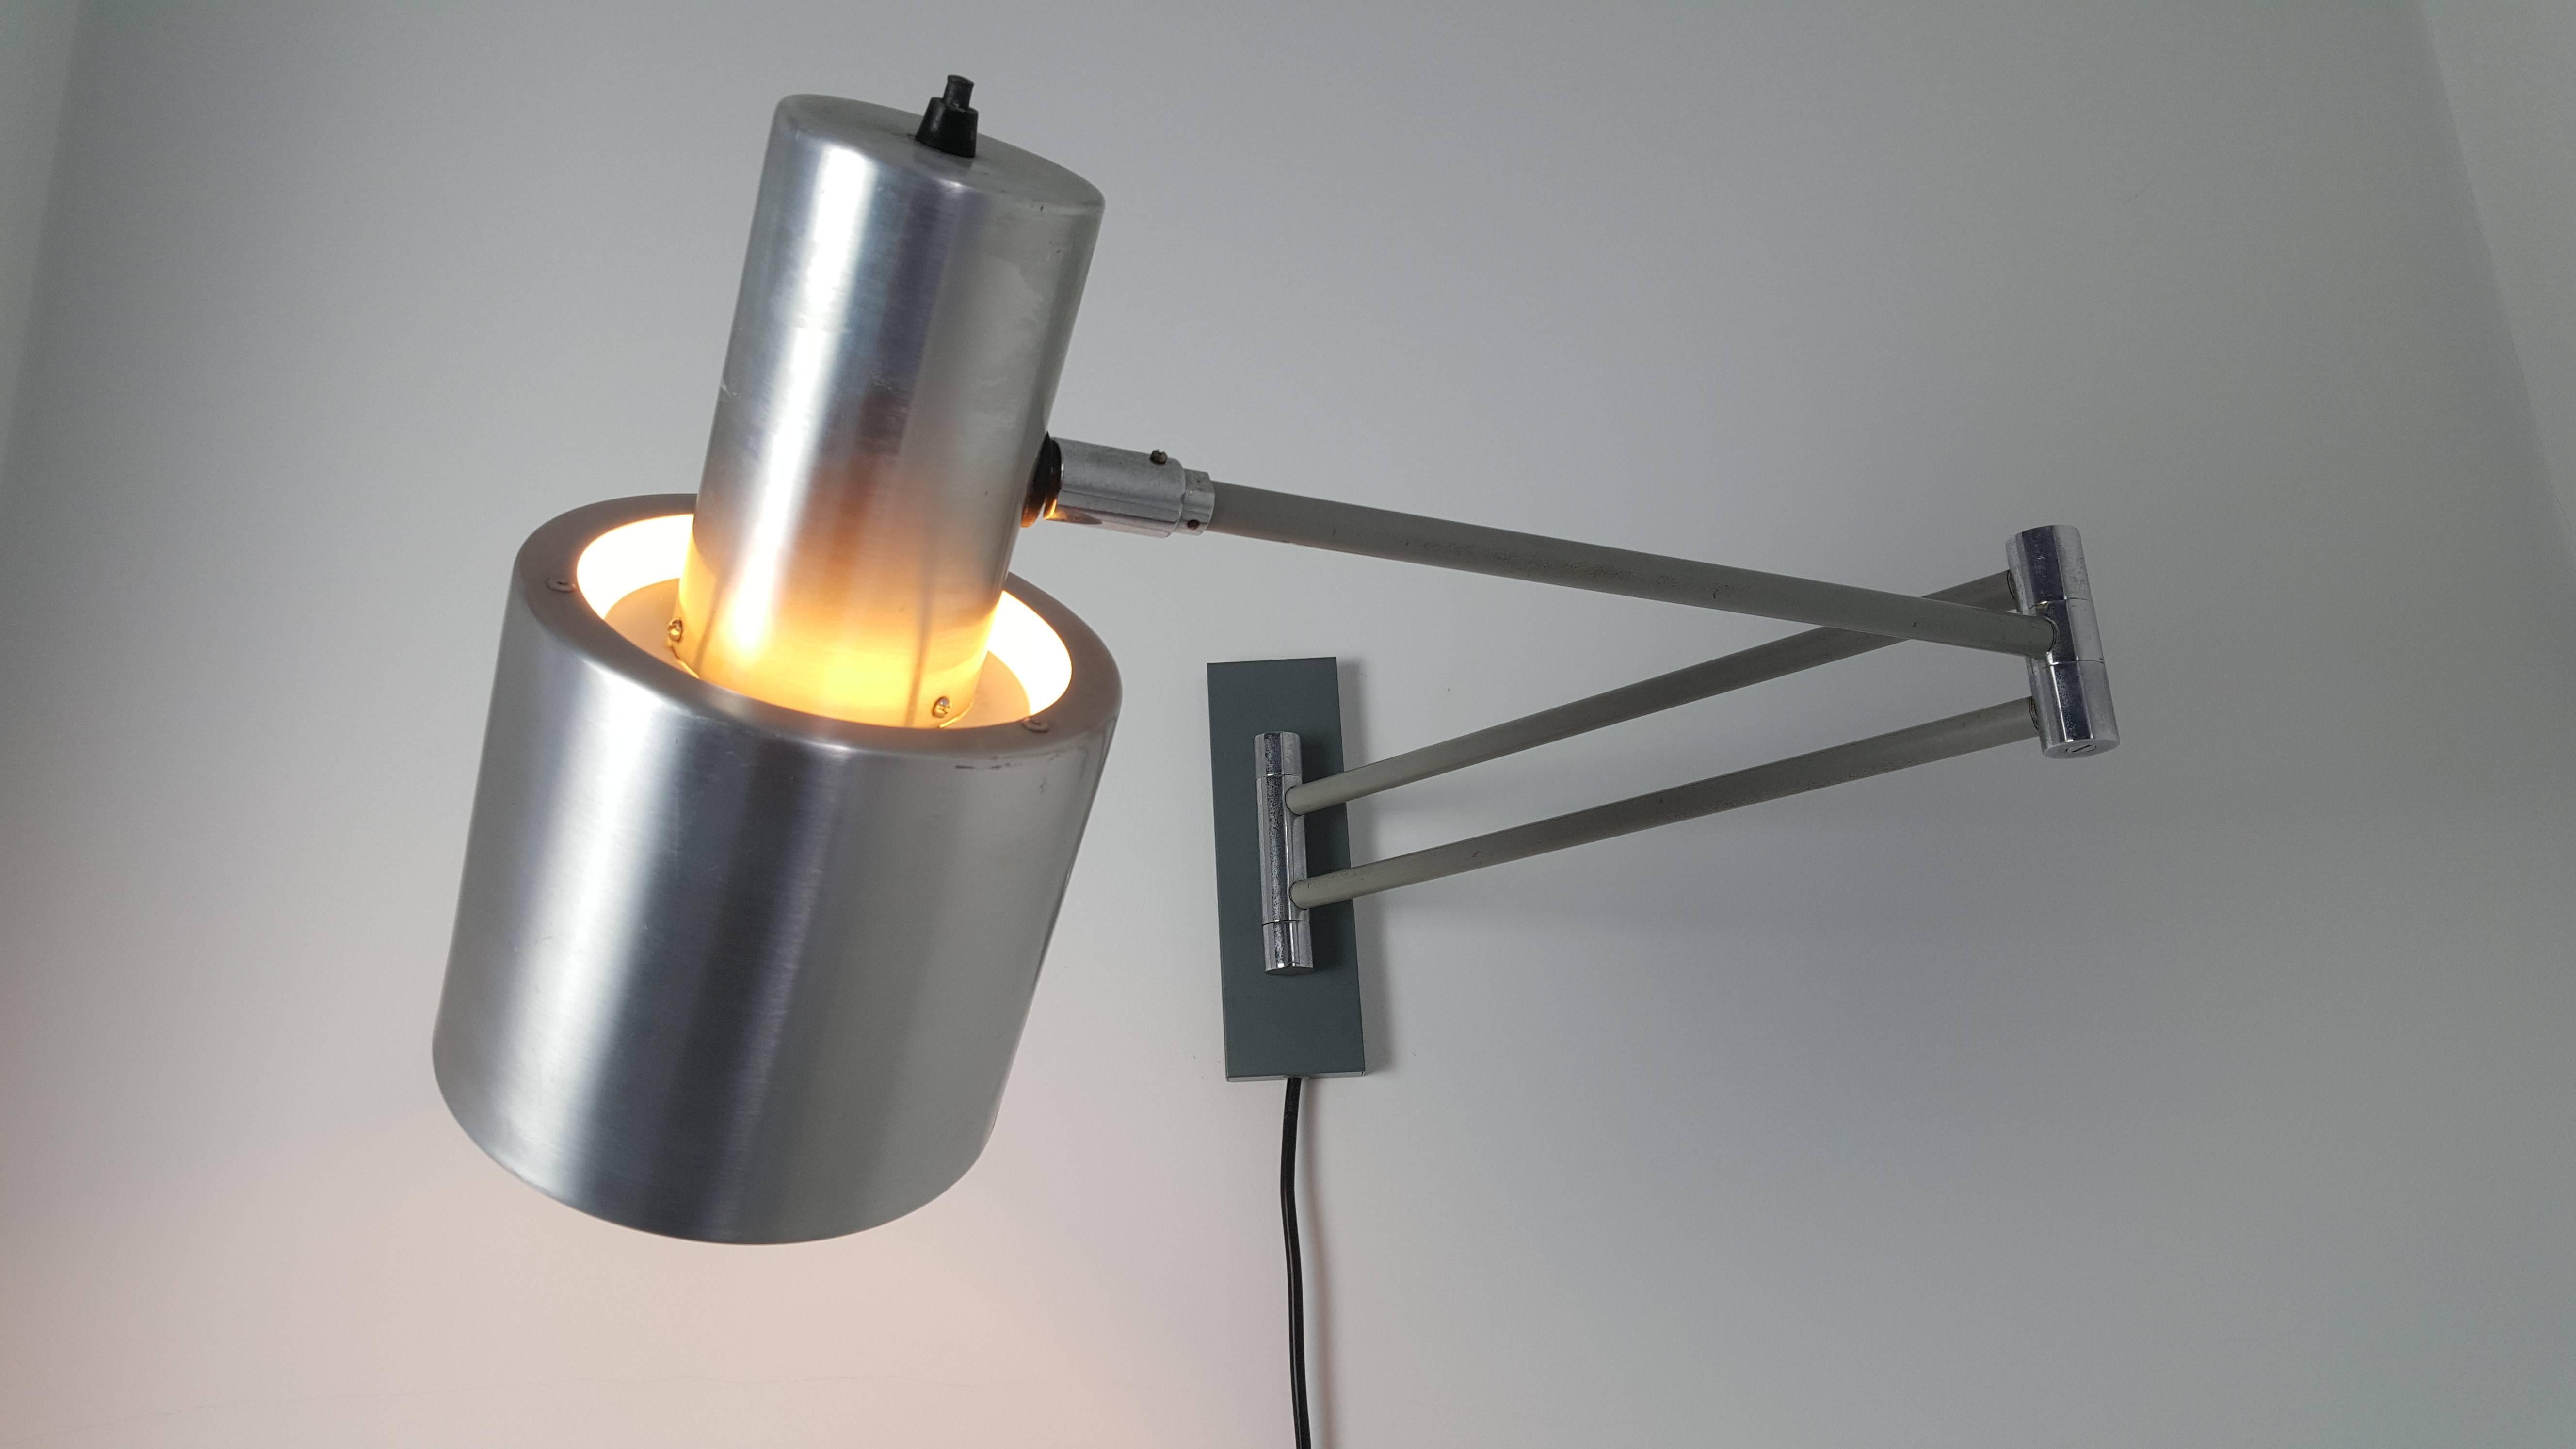 Aluminum 'Horisont' Wall Light Designed by Jo Hammerborg, Produced by Fog & Mørup